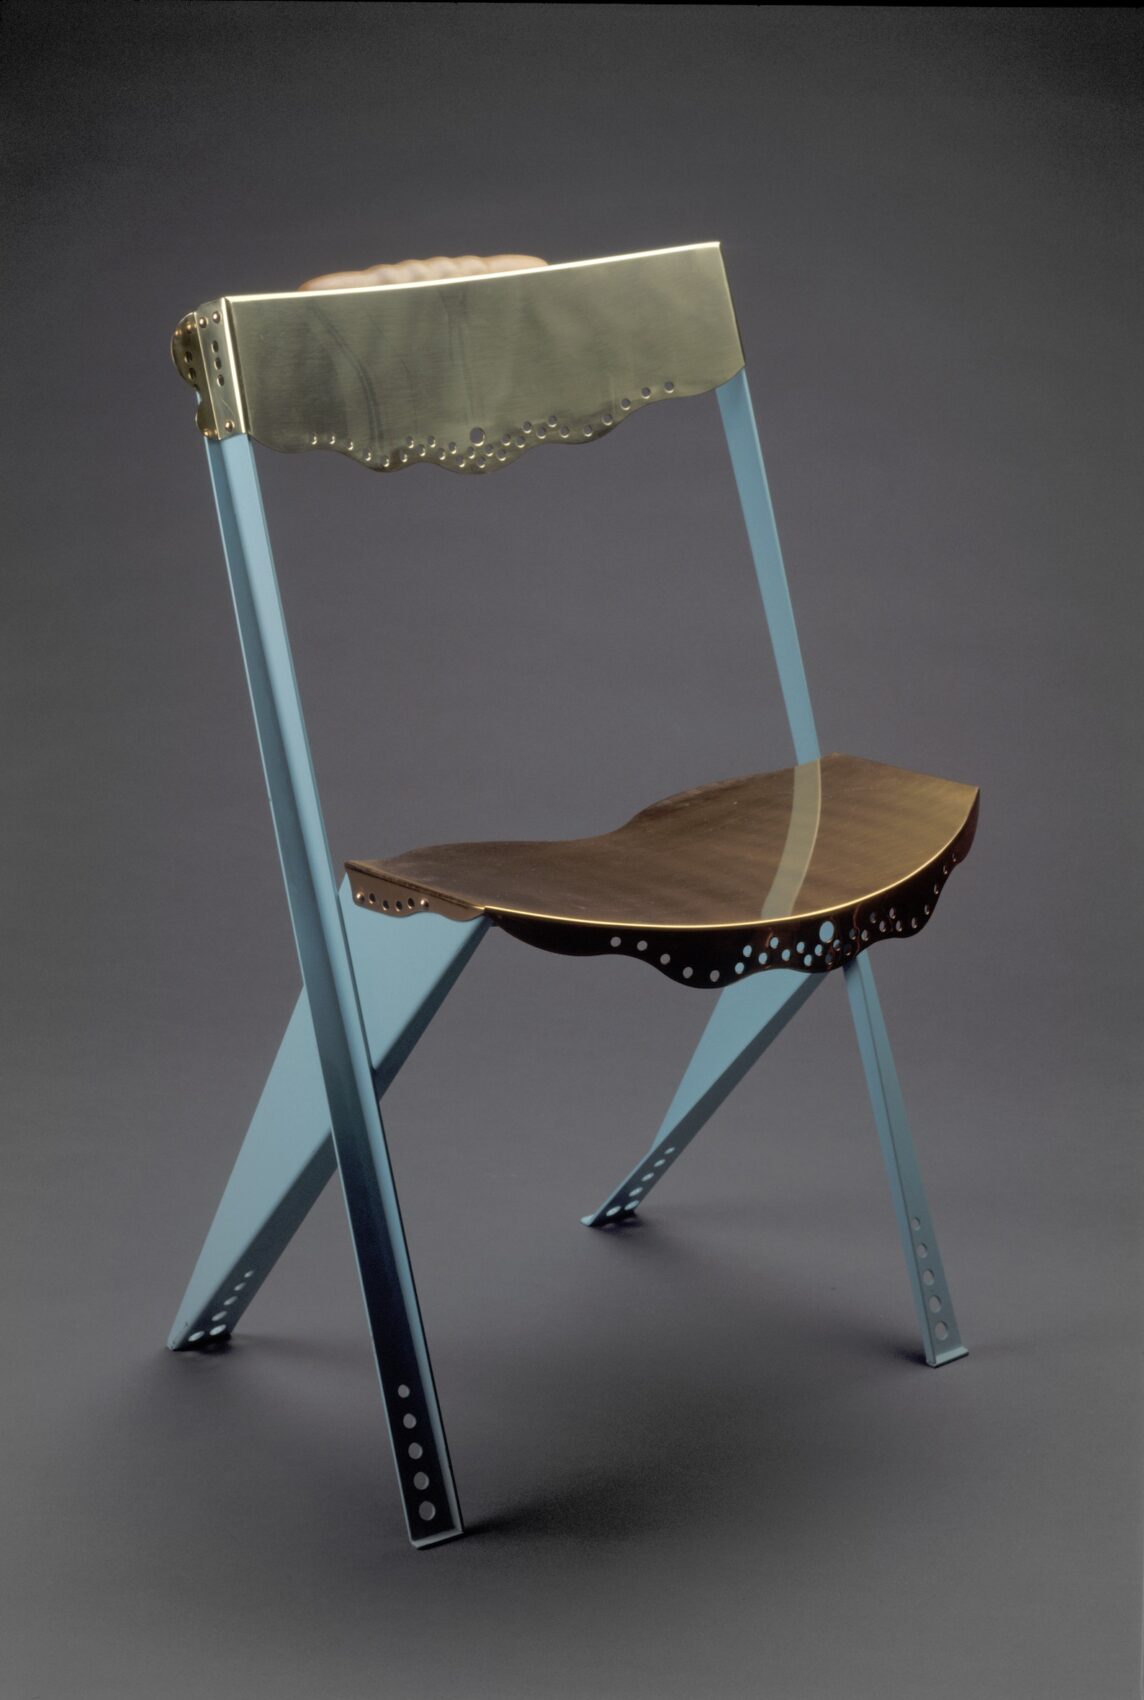 Židle z různých materiálů - mosaz, ocel, dřevo